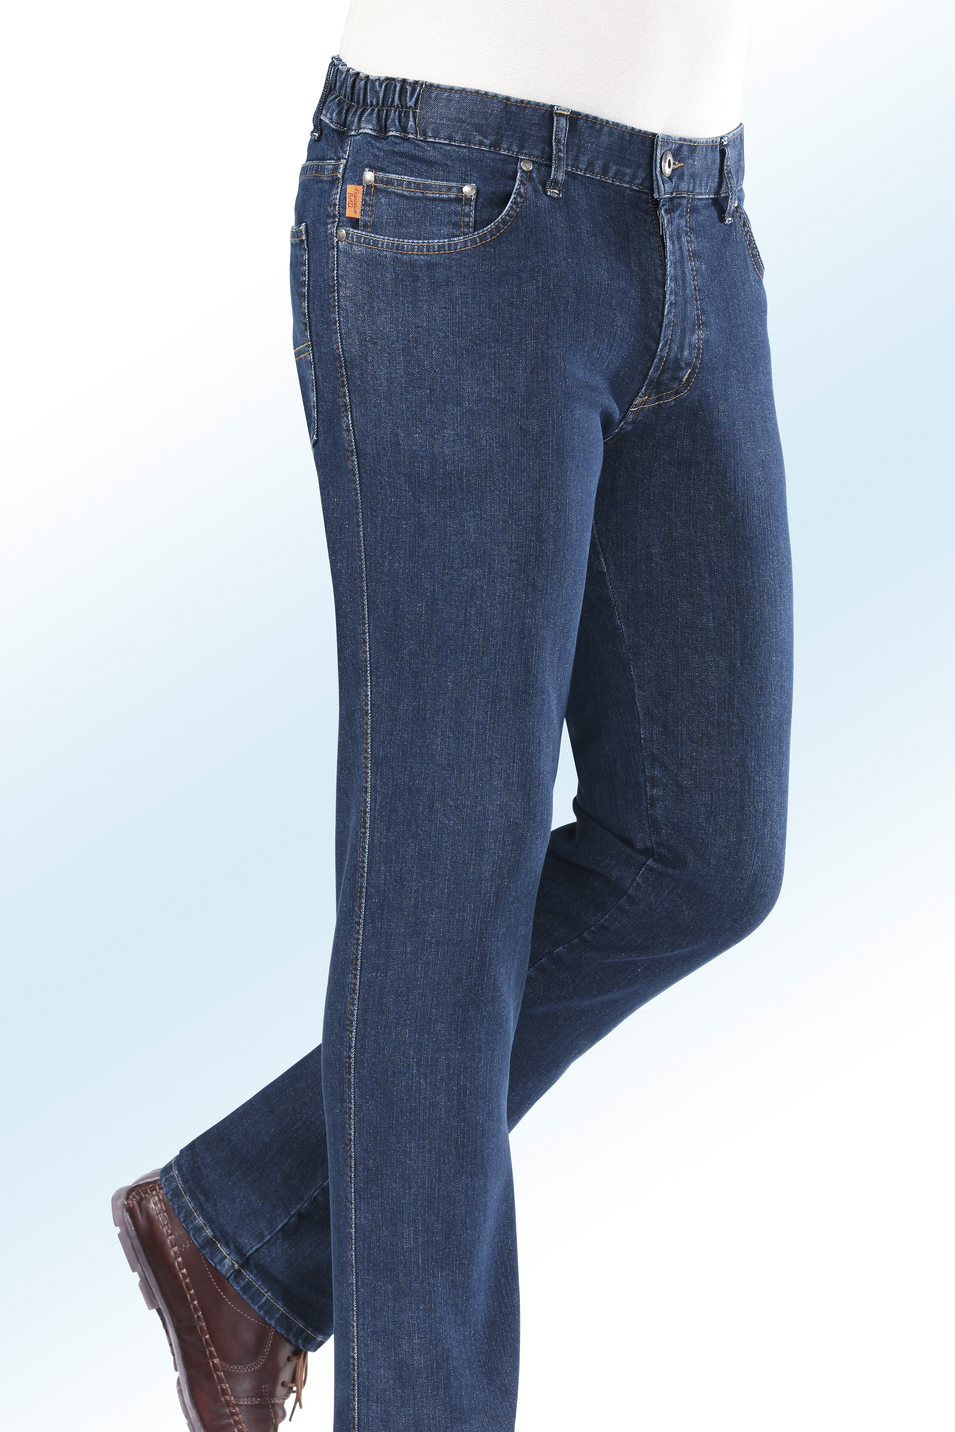 "Francesco Botti"-Jeans mit Dehnbundeinsätzen in 3 Farben, Jeansblau, Größe 52 von FRANCESCO BOTTI